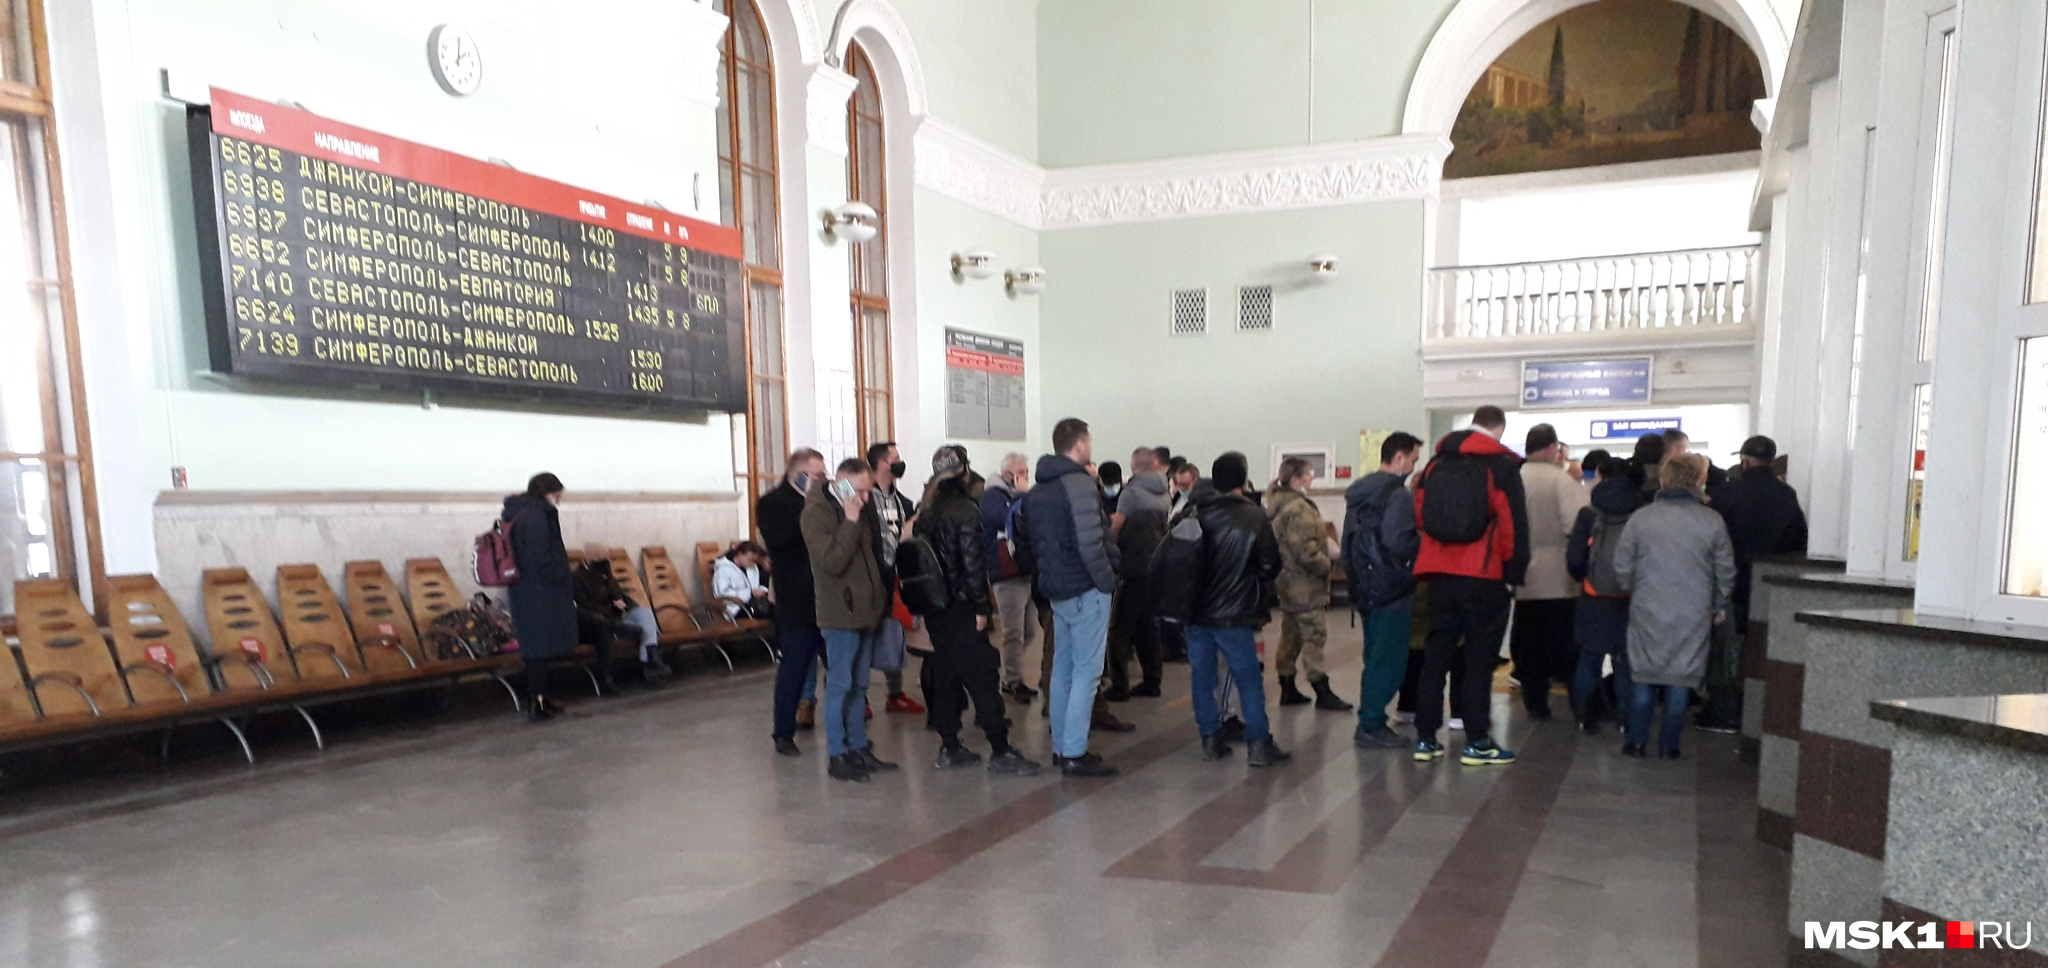 Бывшие авиапассажиры в очереди за билетами на железнодорожном вокзале Симферополя. К составам цепляют дополнительные вагоны, чтобы все поместились